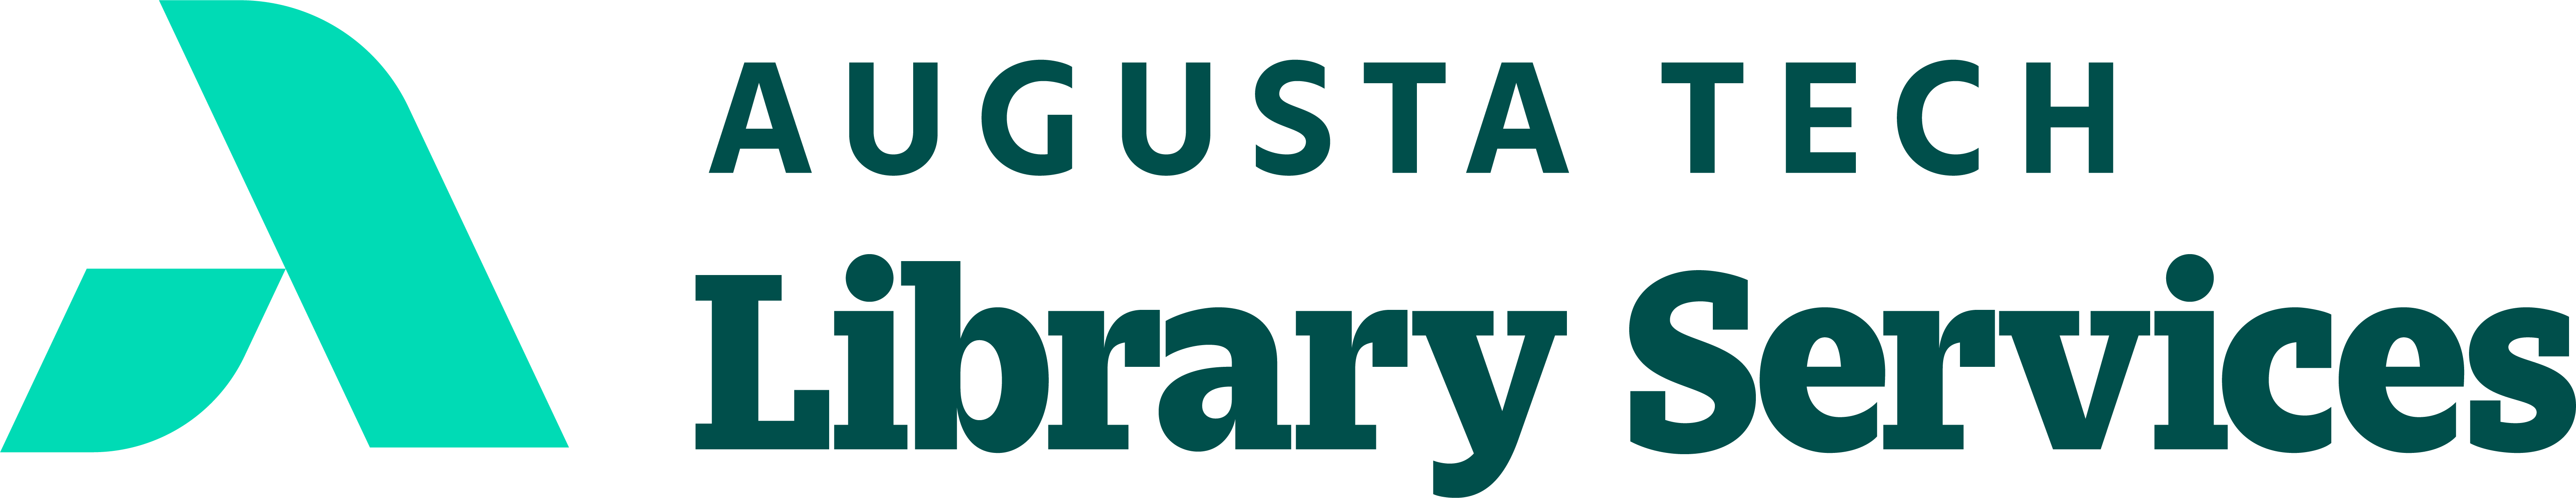 Augusta Tech Library Service Logo